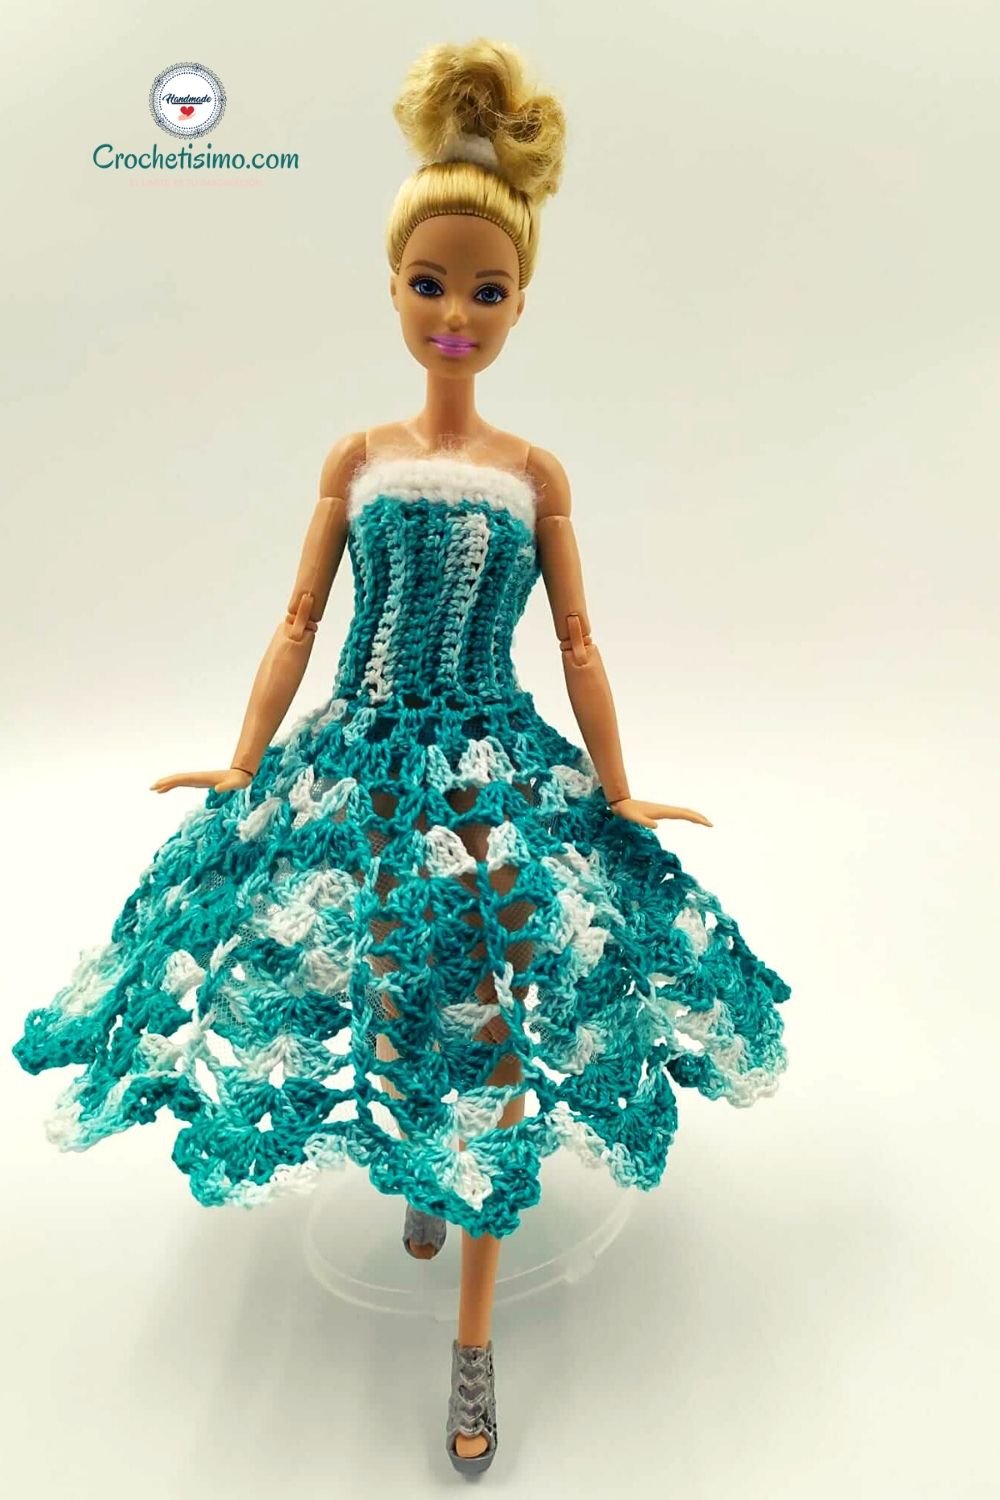 Vestido Espuma de Mar crochet muñeca Barbie Crochetisimo